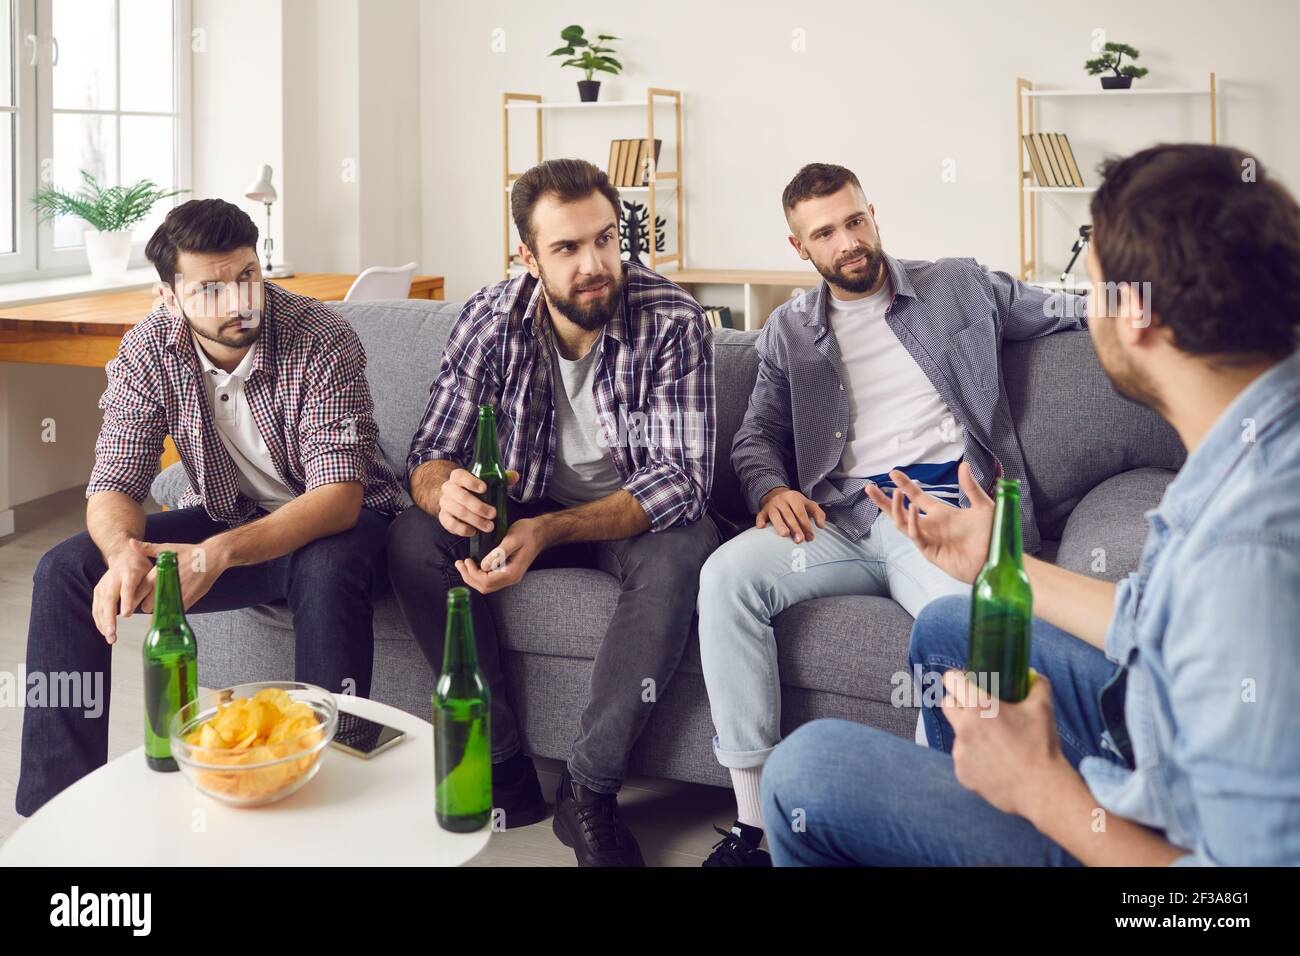 Gli amici di sesso maschile bevono birra e stanno conversando piacevolmente, trascorrendo un po' di tempo insieme. Foto Stock